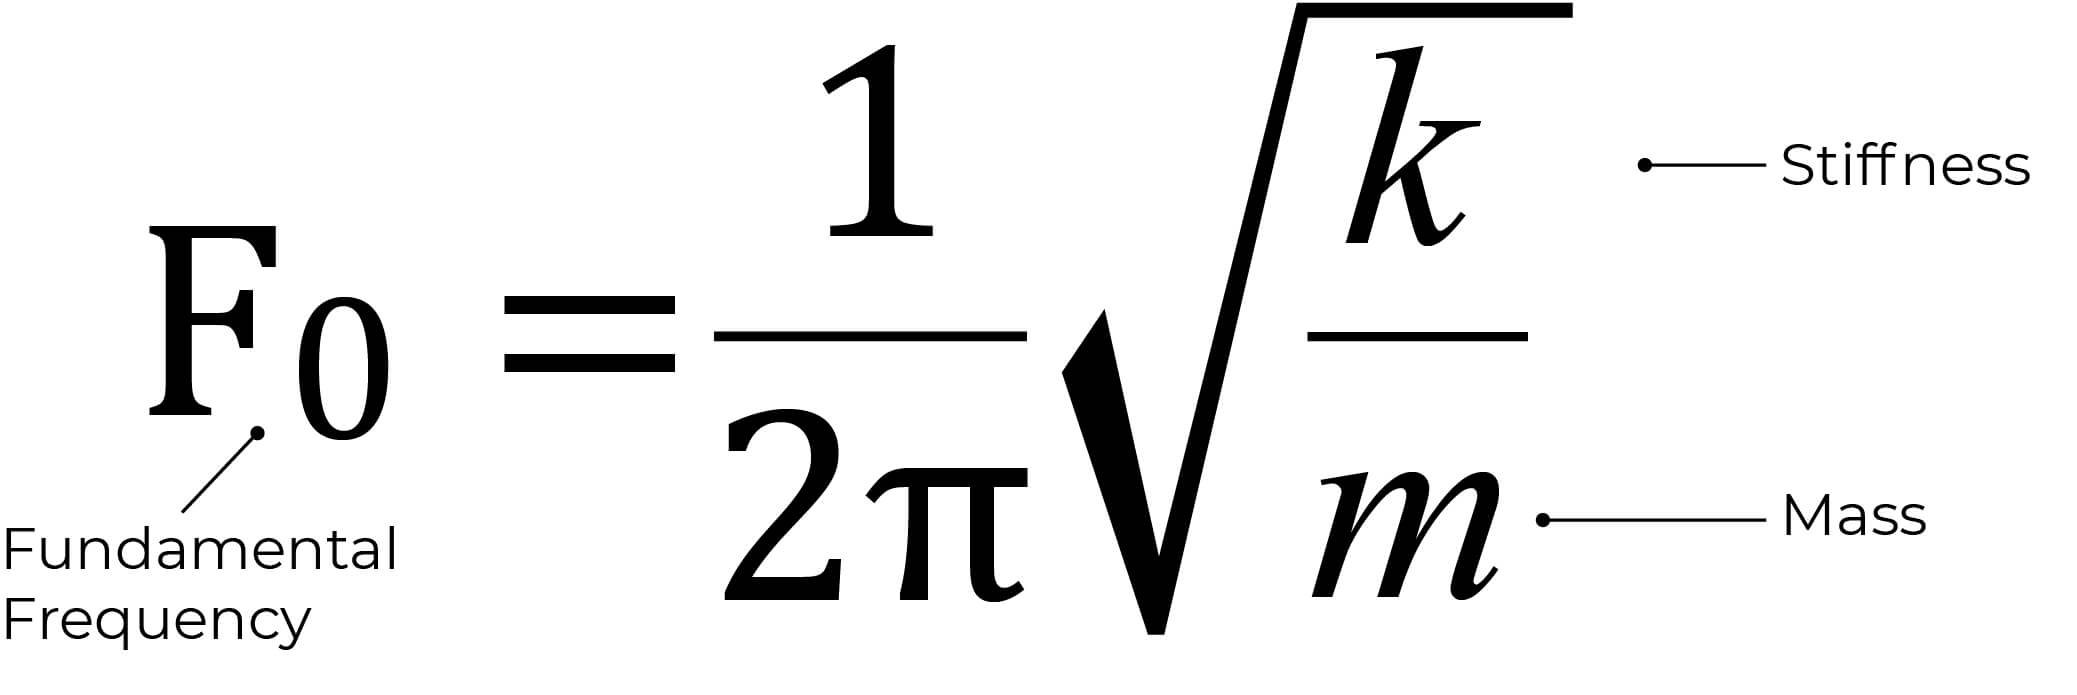 Fig 4: Formel für Eigenfrequenz.